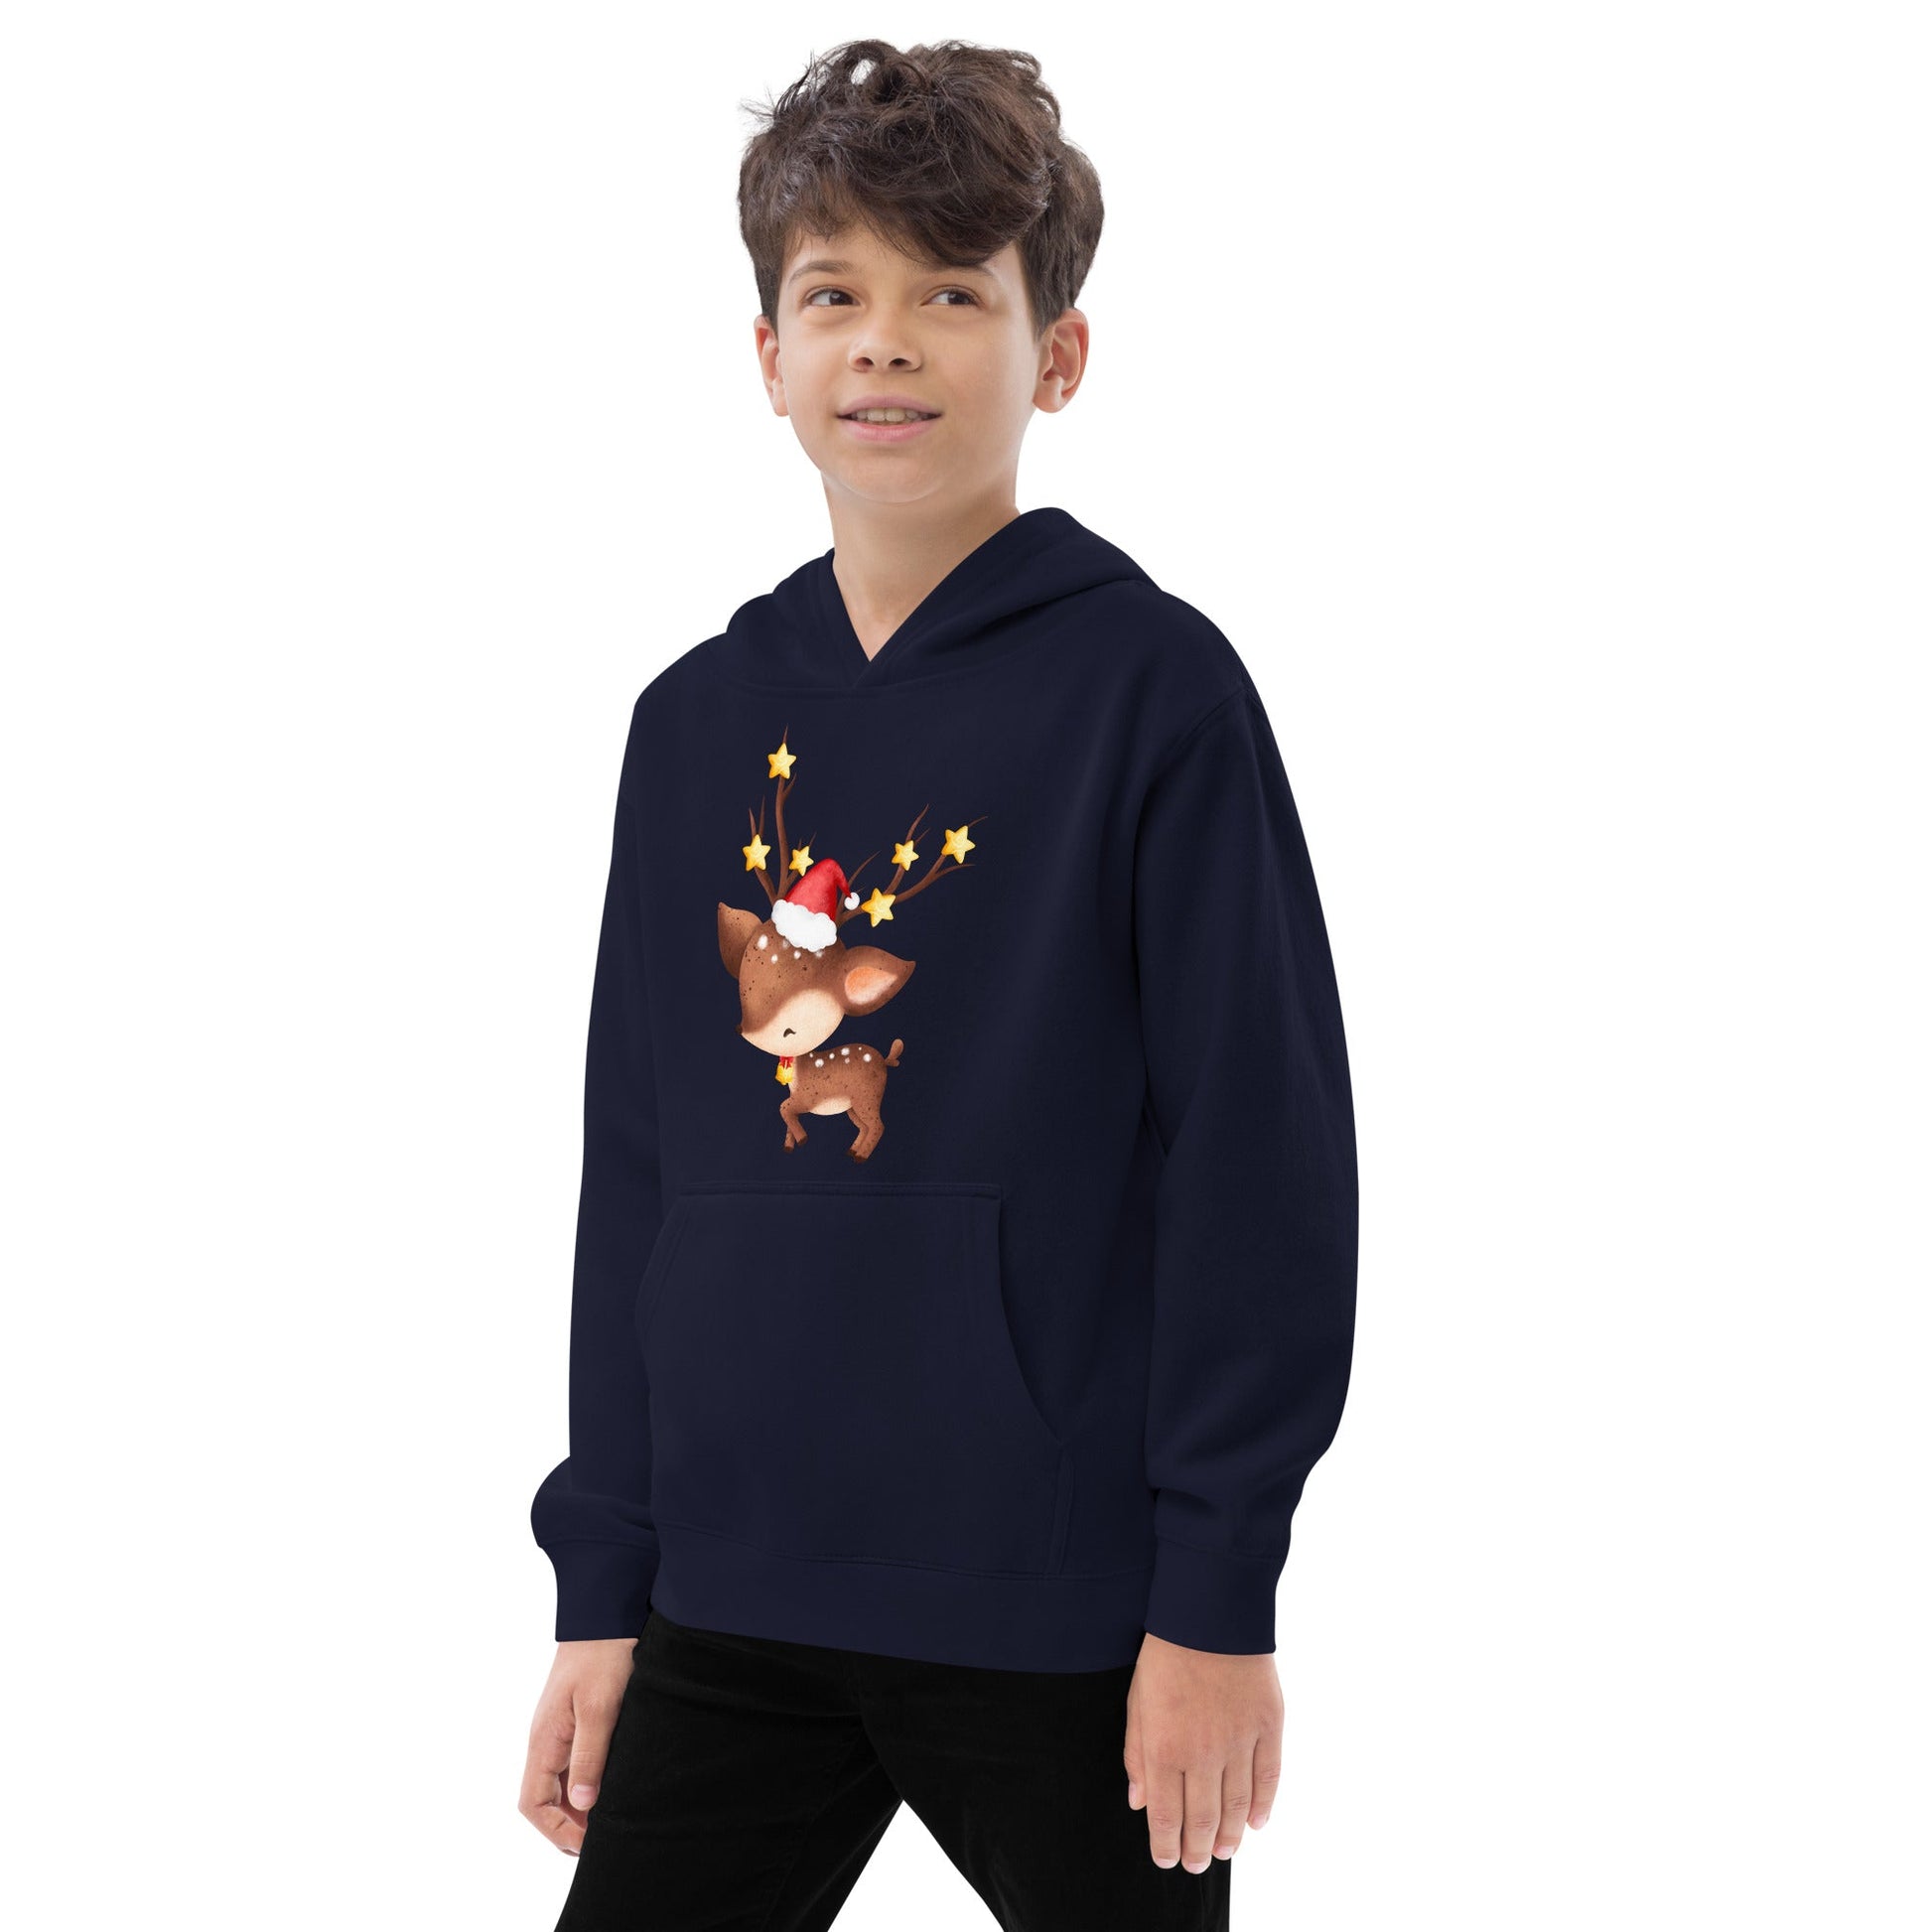 Baby Reindeer | Kids fleece hoodie